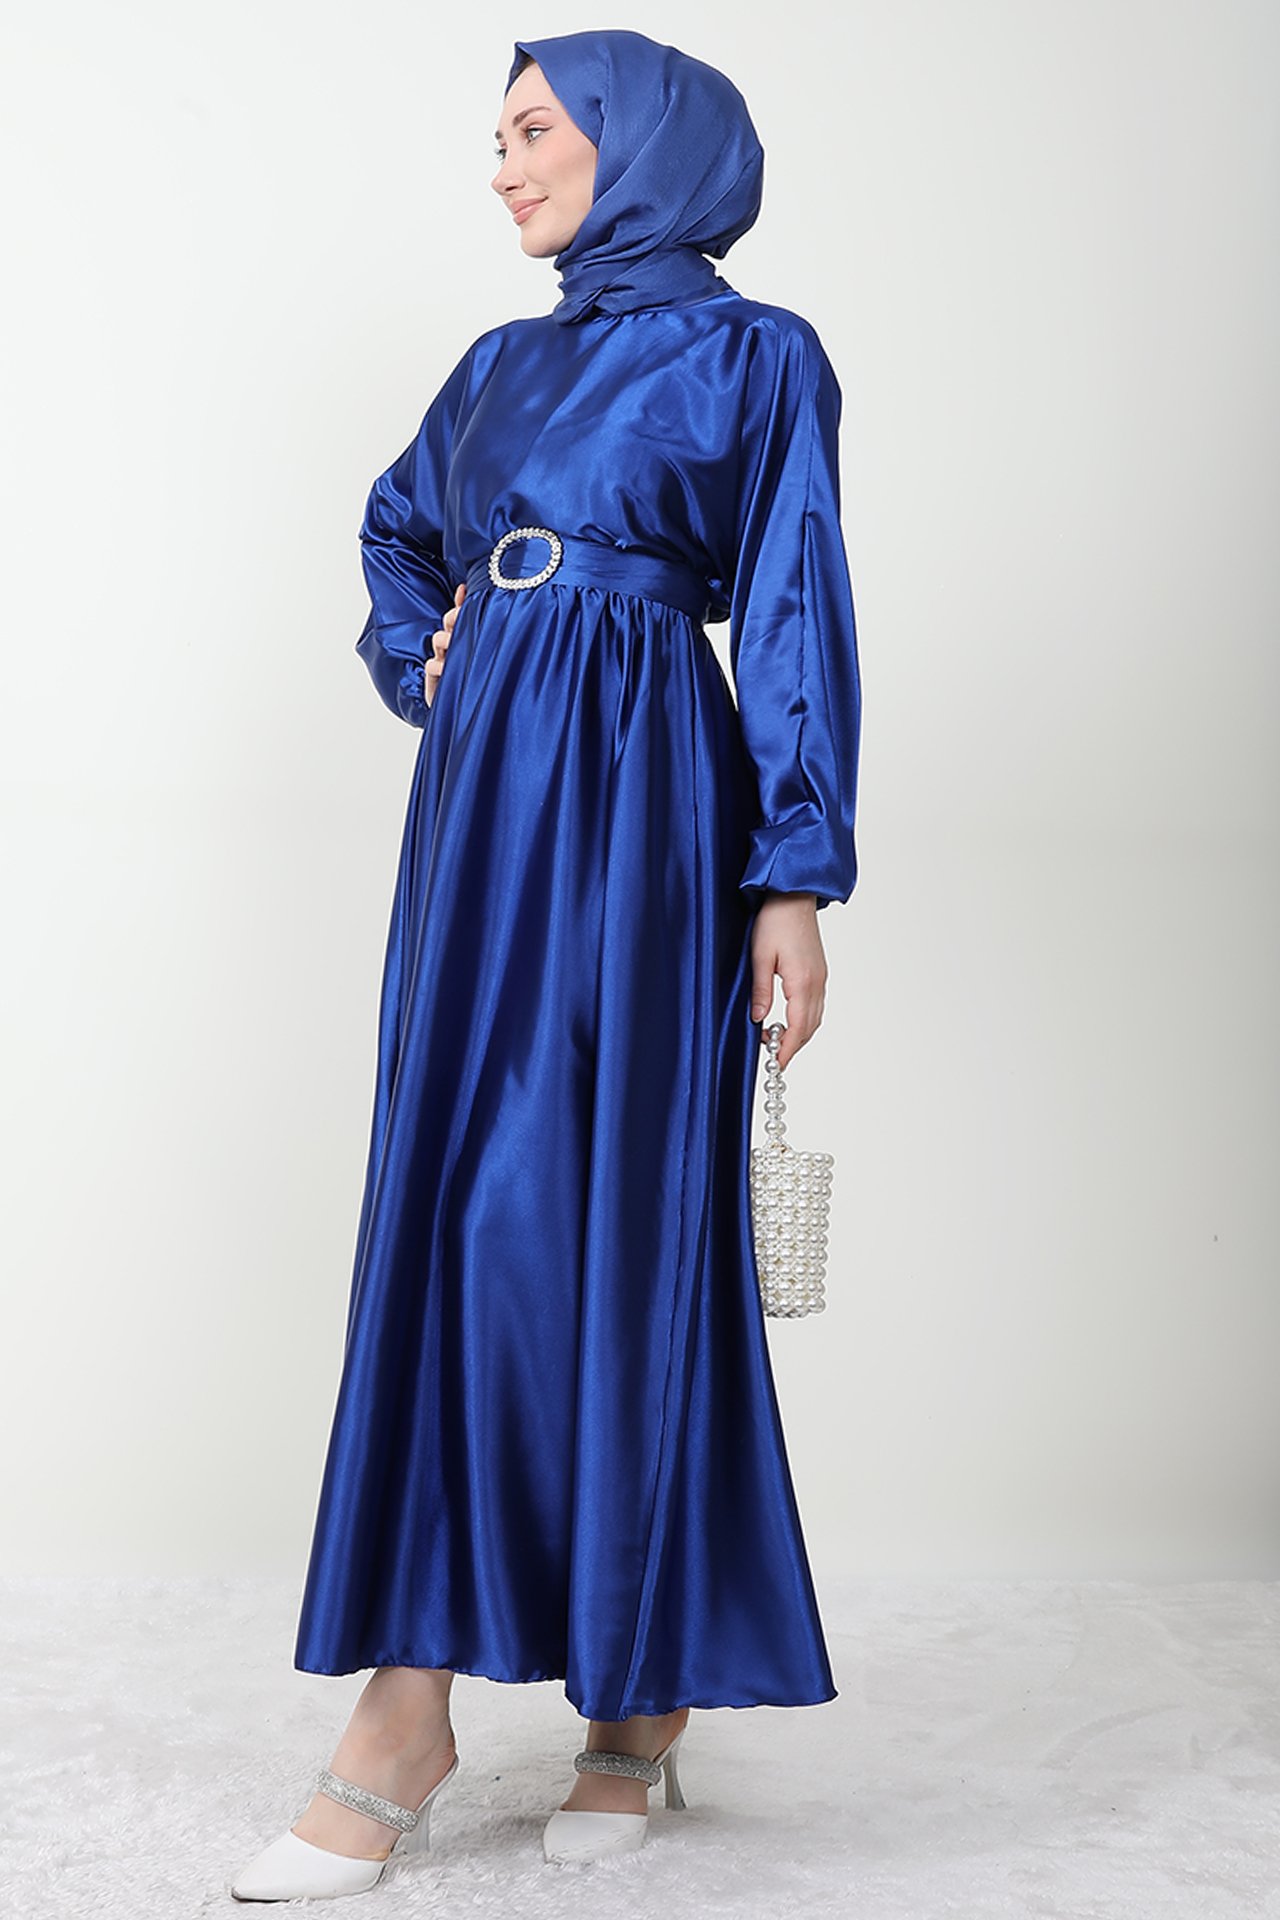 GİZAGİYİM - Zincir Motif Kuşaklı Elbise Gece Mavi